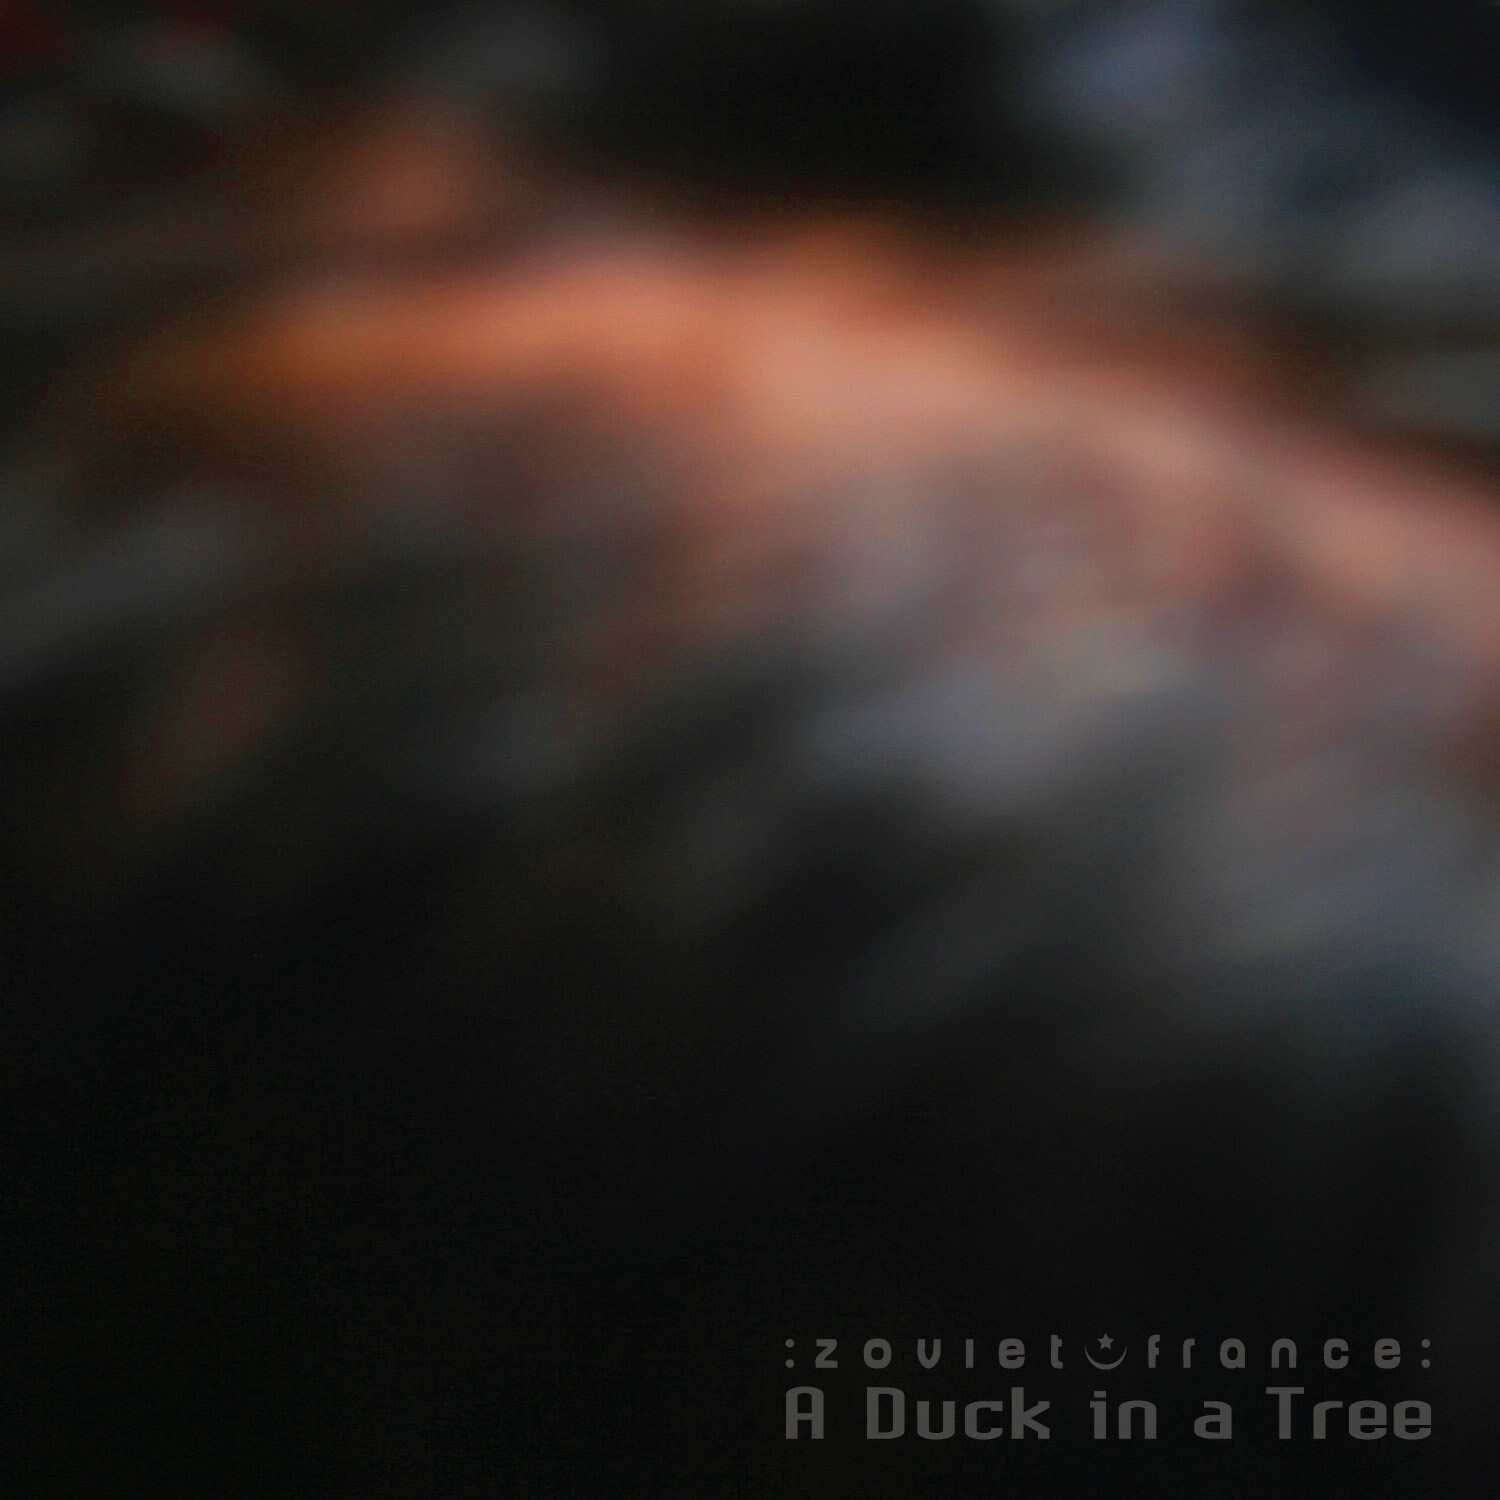 A-Duck-in-a-Tree-2018-08-04-_-Art-Art-Primera-Segunda-cover-1500.jpg